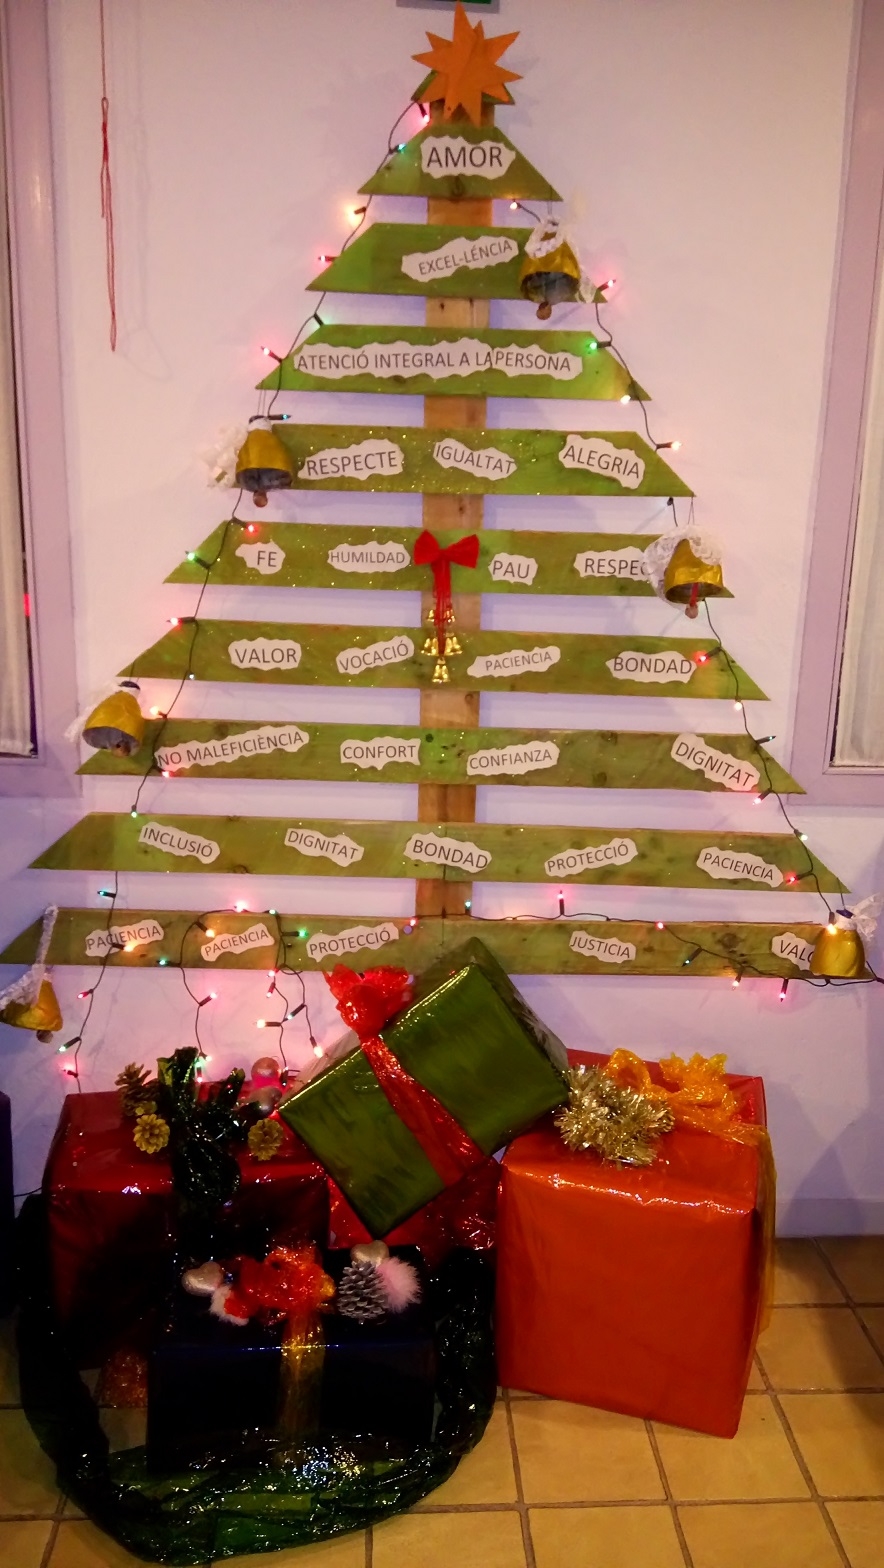 Un arbre de Nadal construït en base a un palet, una de les creacions